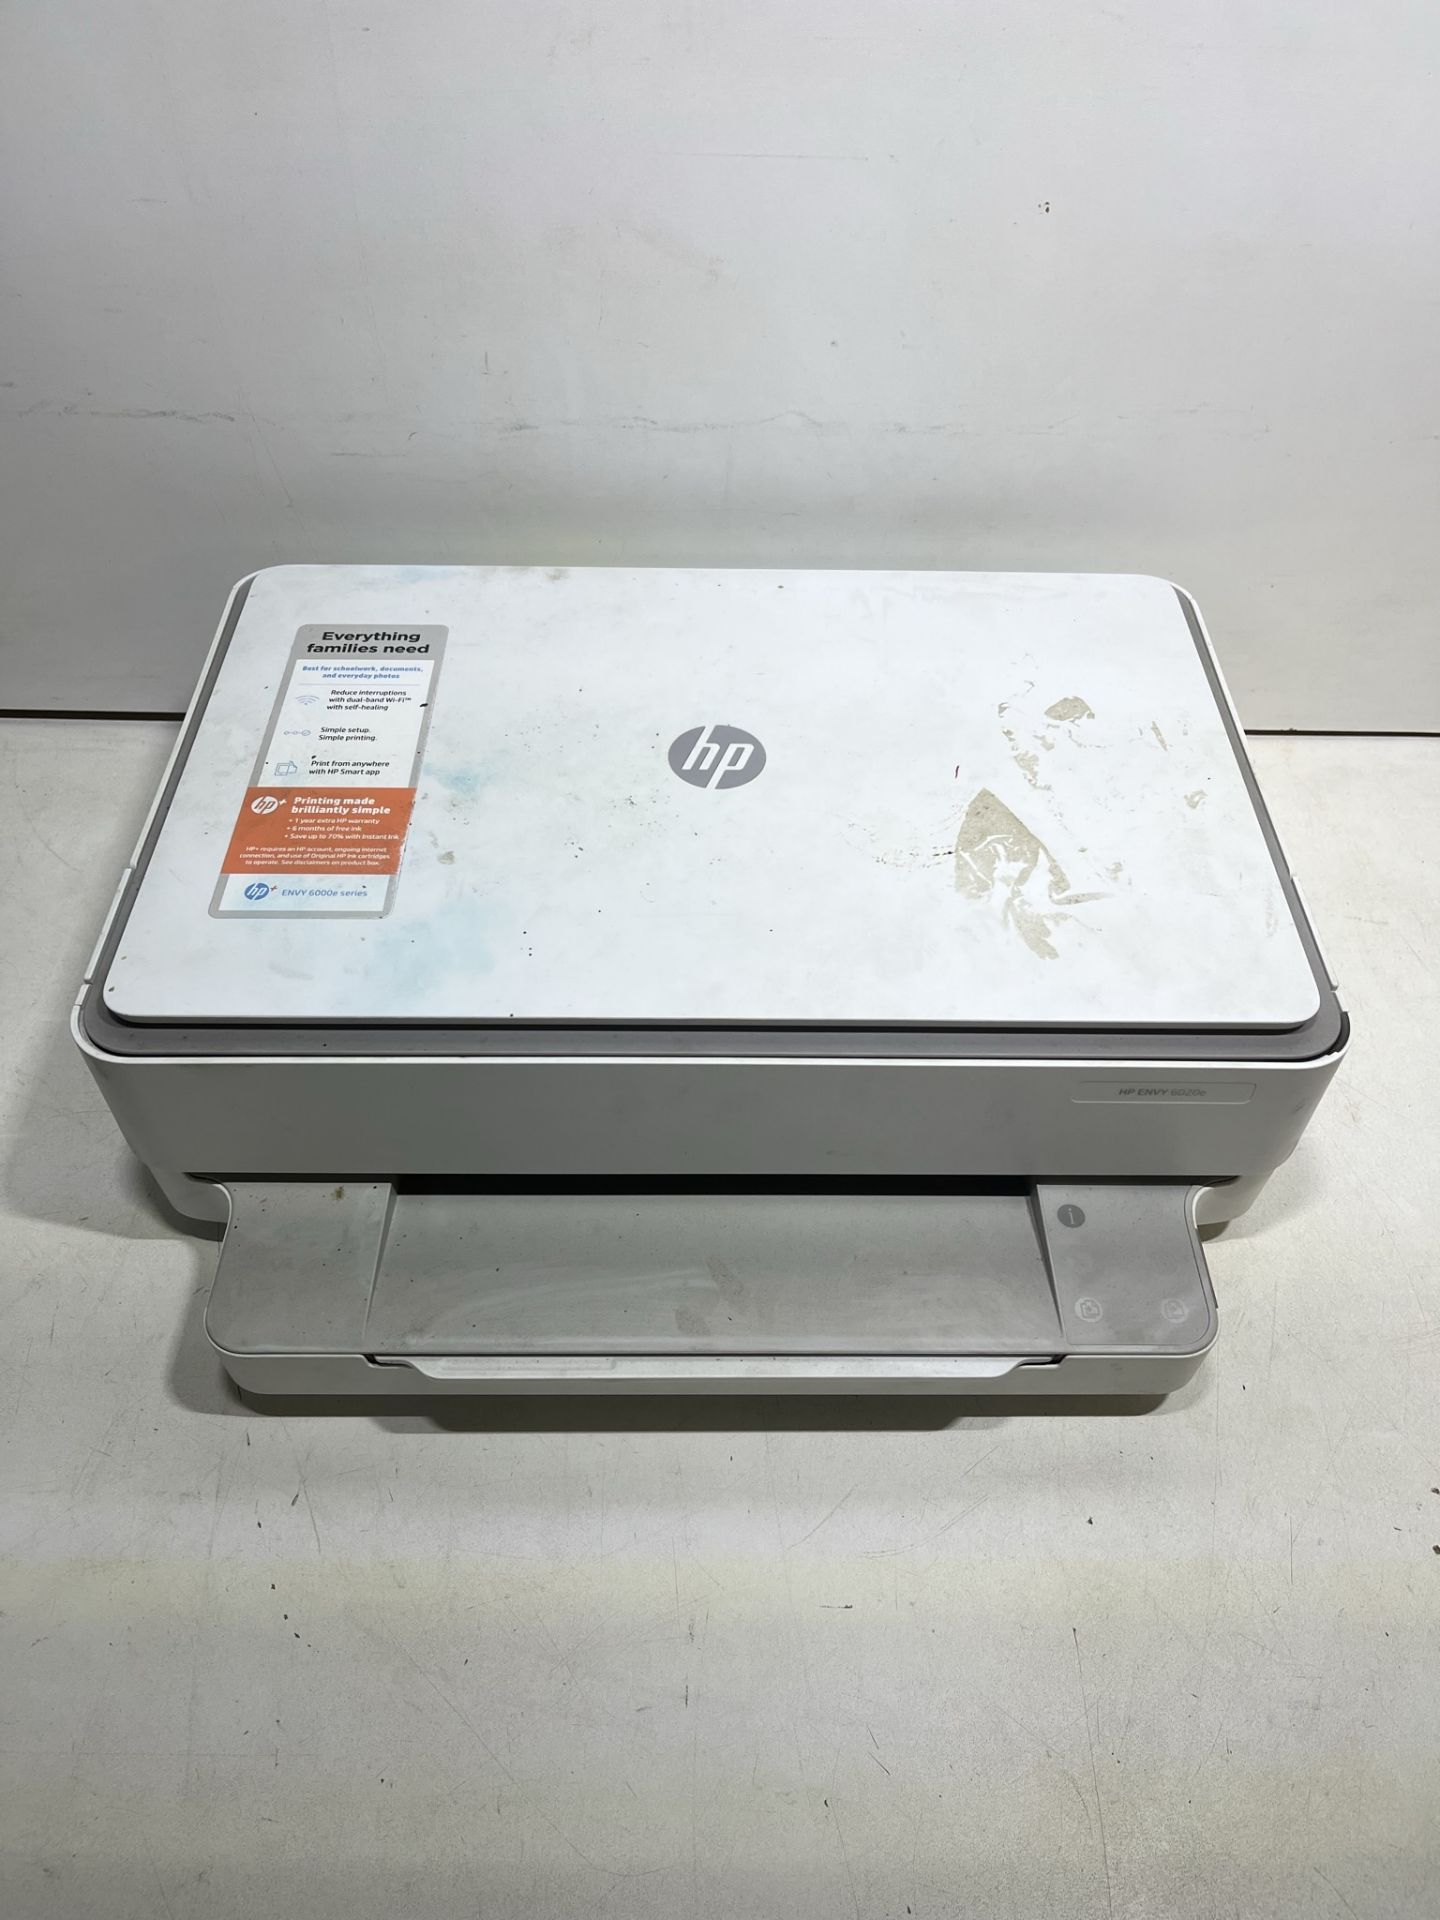 HP ENVY 6020e All-in-One Inkjet Printer